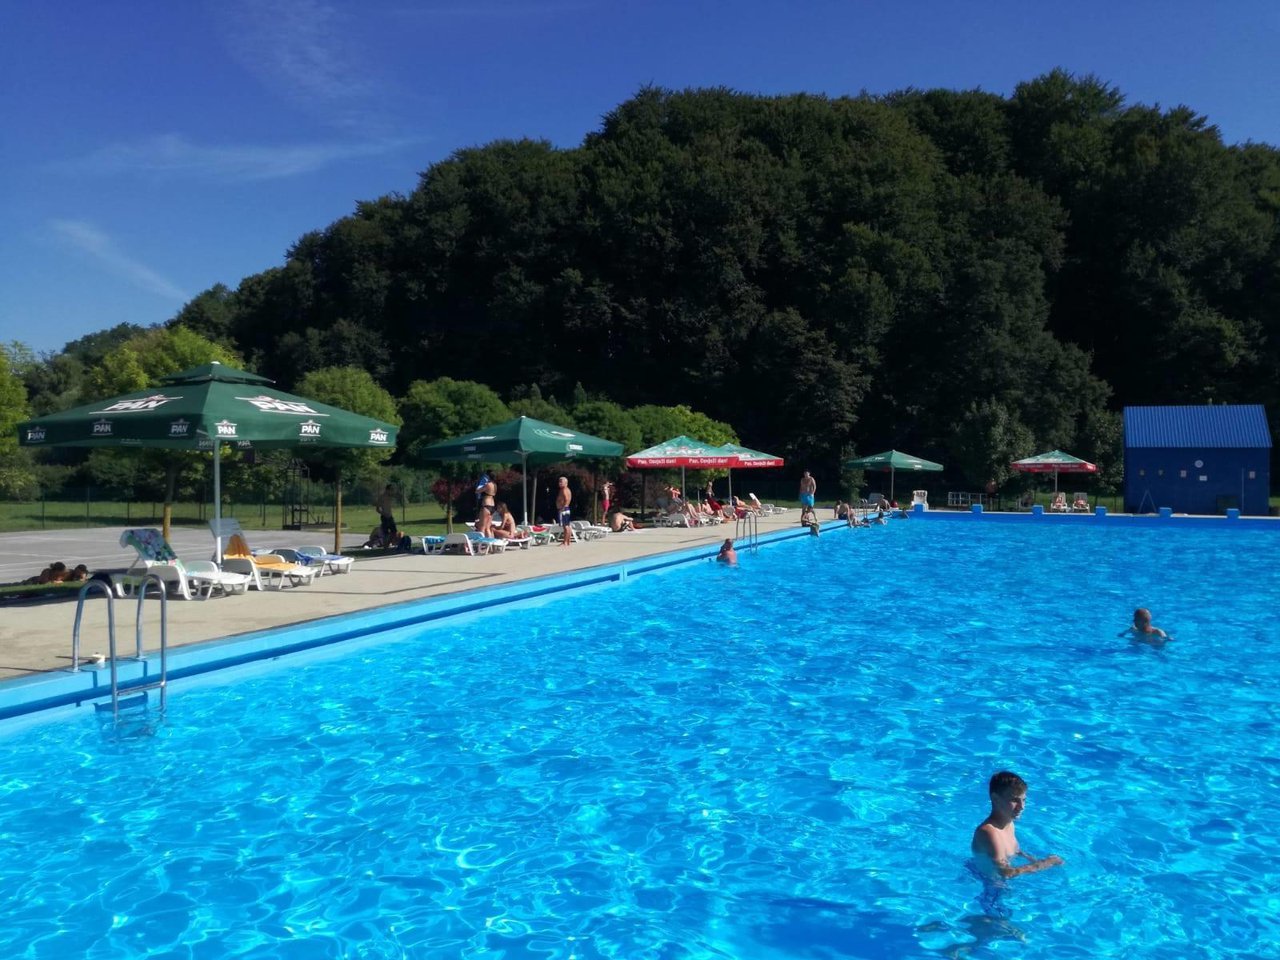 Fotografija: Škola plivanja na šandrovačkom bazenu besplatna je za sve male polaznike/Foto: Facebook bazen Gradina Šandrovac